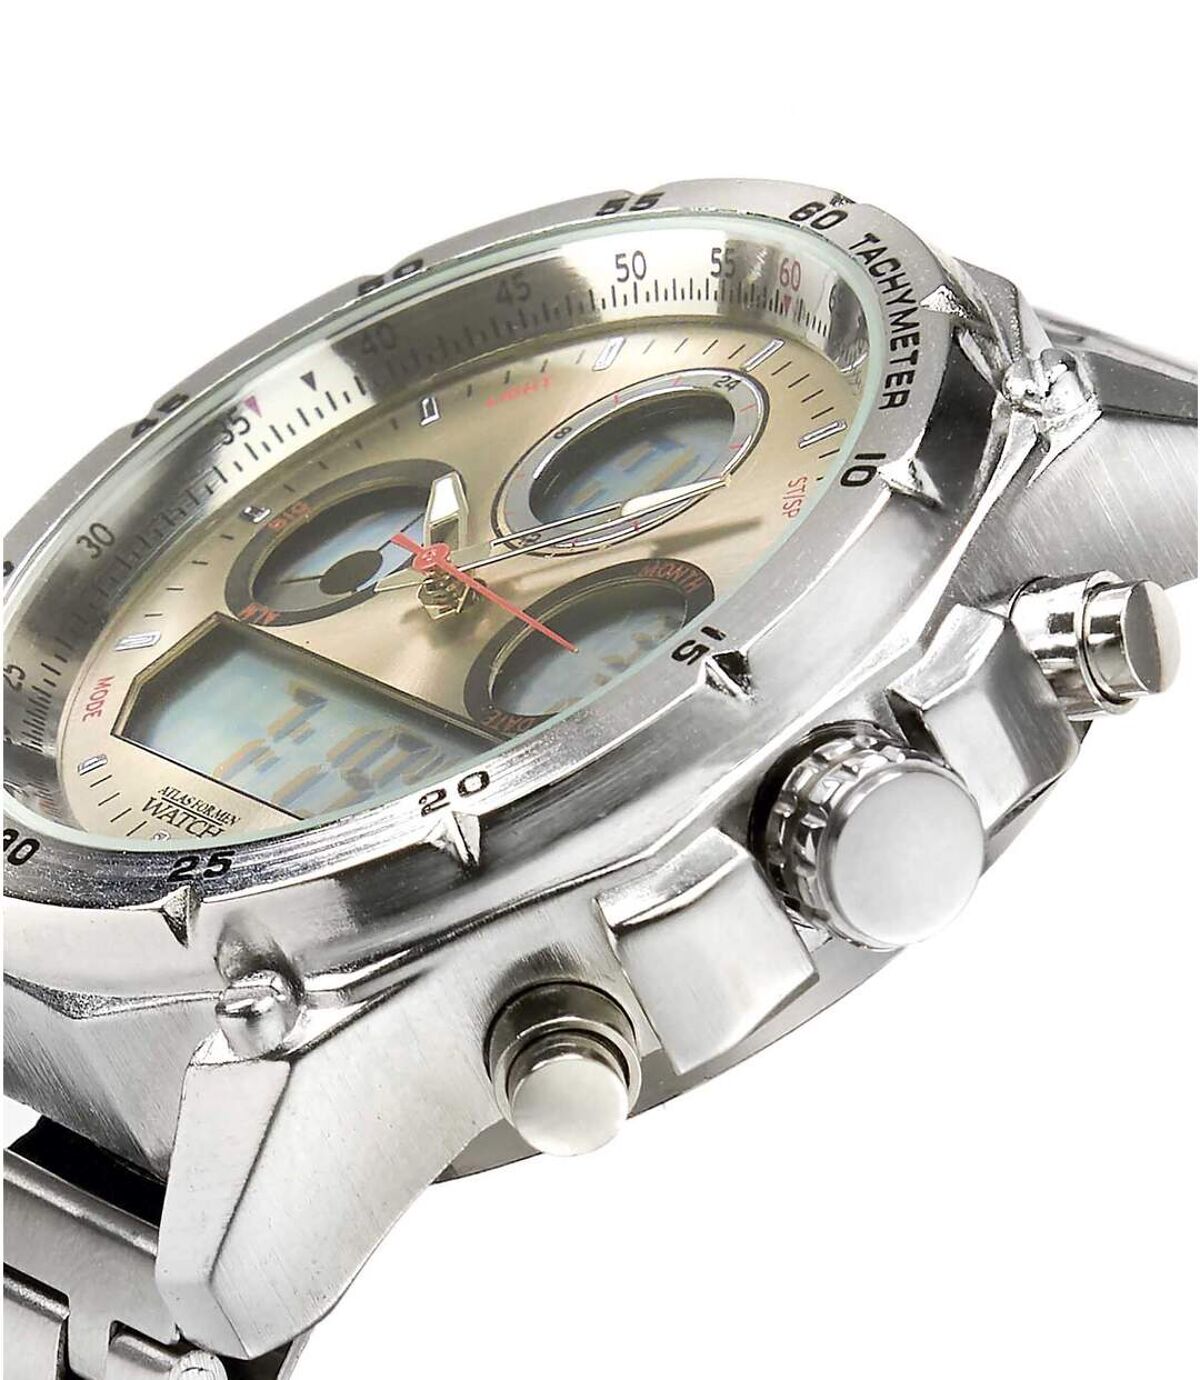 Horloge CHRONO SPORT met dubbele tijdsweergave  Atlas For Men